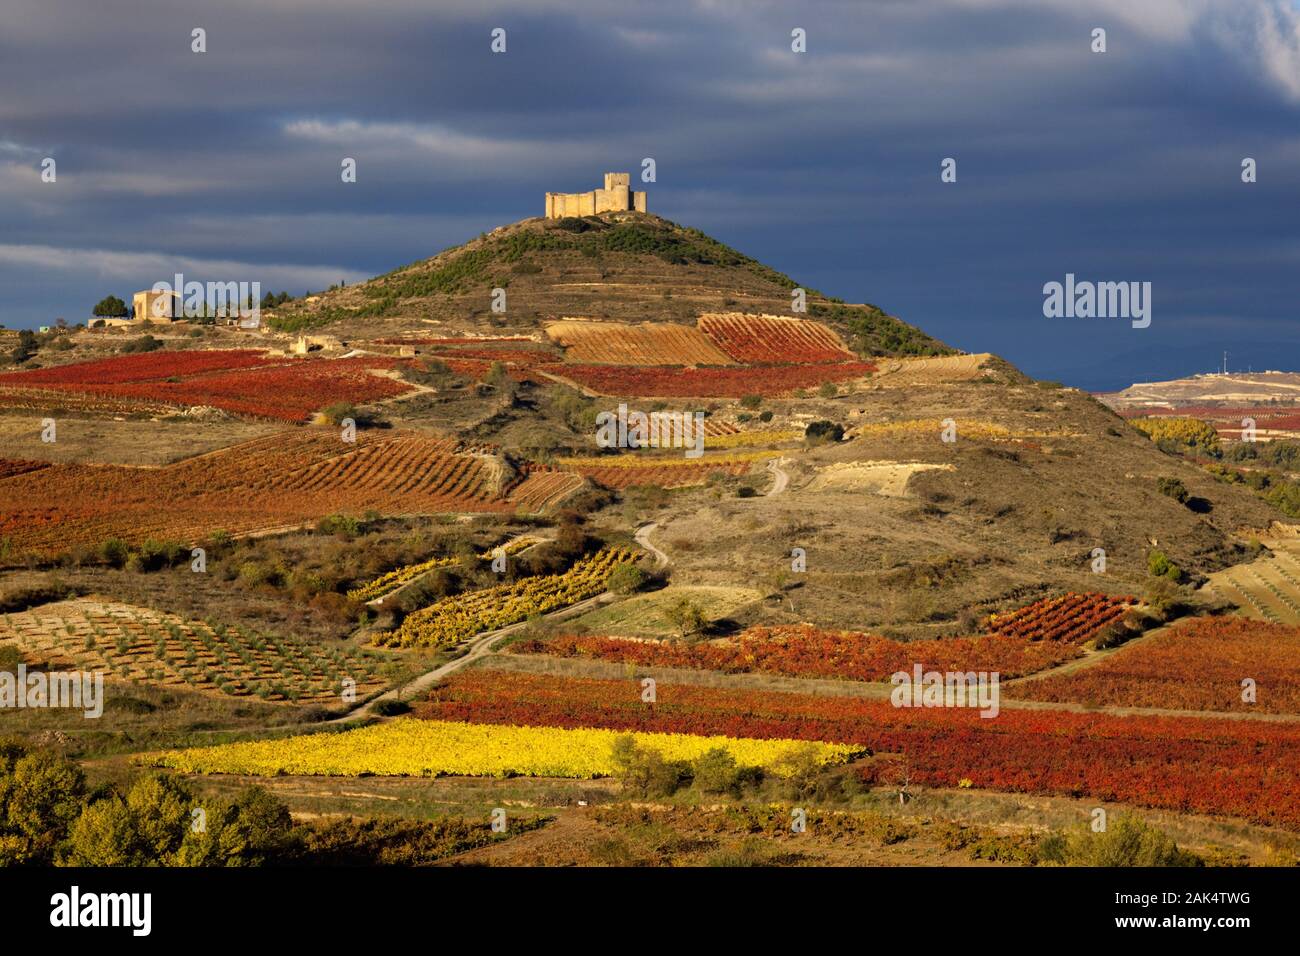 San Vincente an der Ebro-Schleife, Spanien Norden | usage worldwide Stock Photo